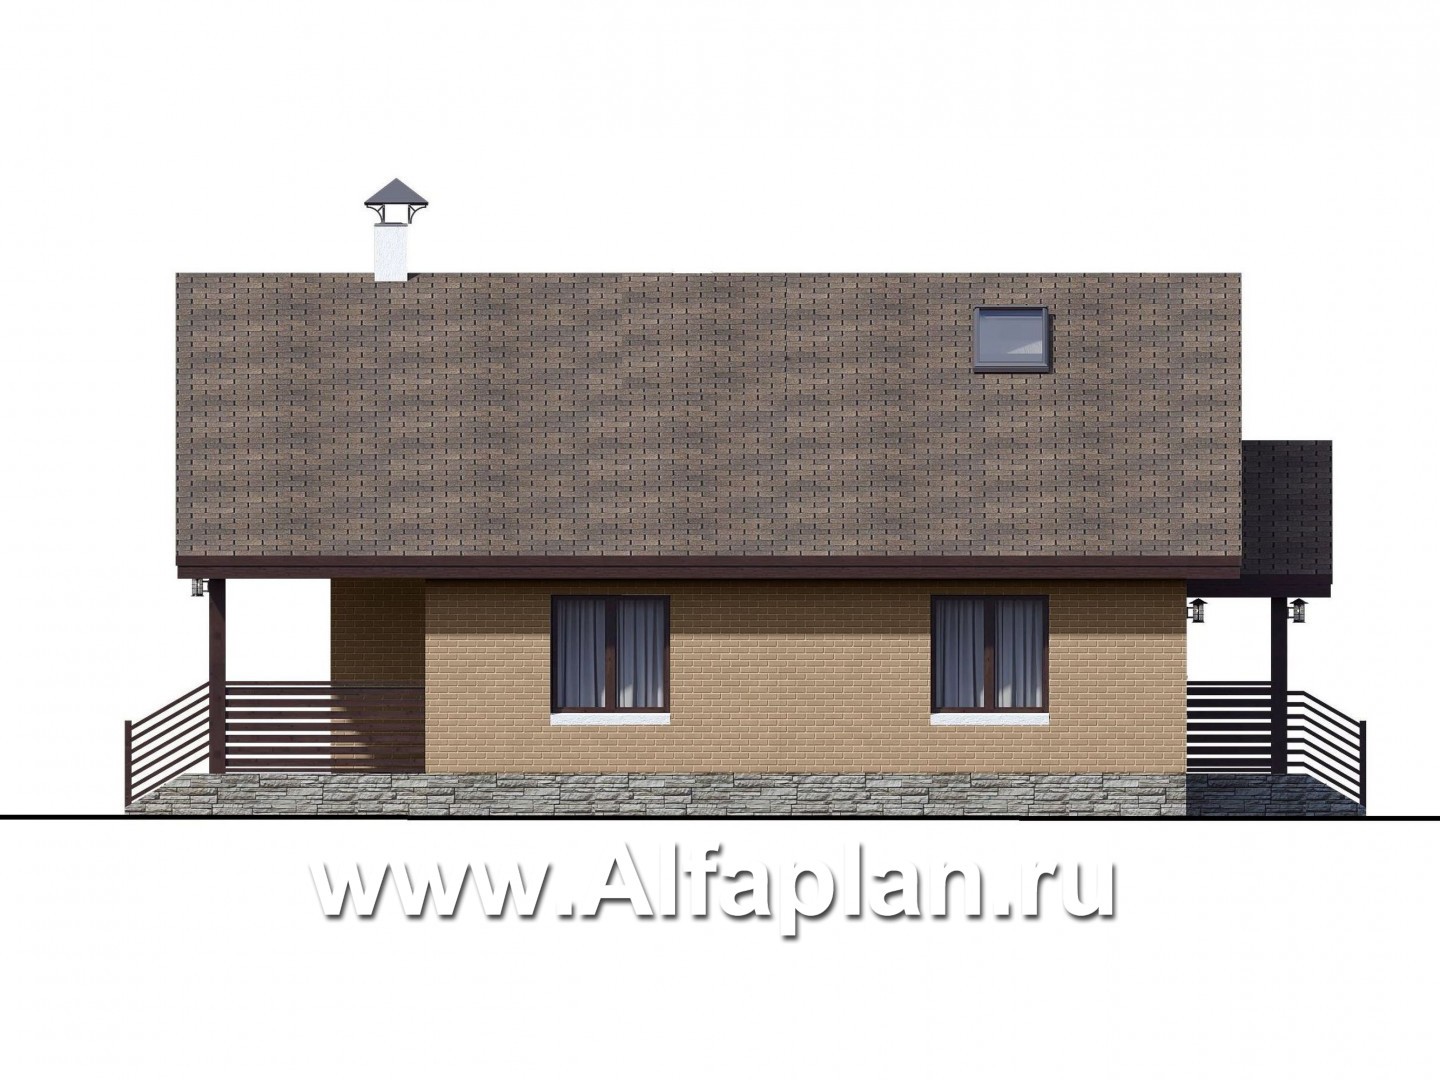 Проекты домов Альфаплан - «Моризо» - проект дома с мансардой, планировка с двусветной гостиной и 2 спальни на 1 эт, шале с двускатной крышей - изображение фасада №2